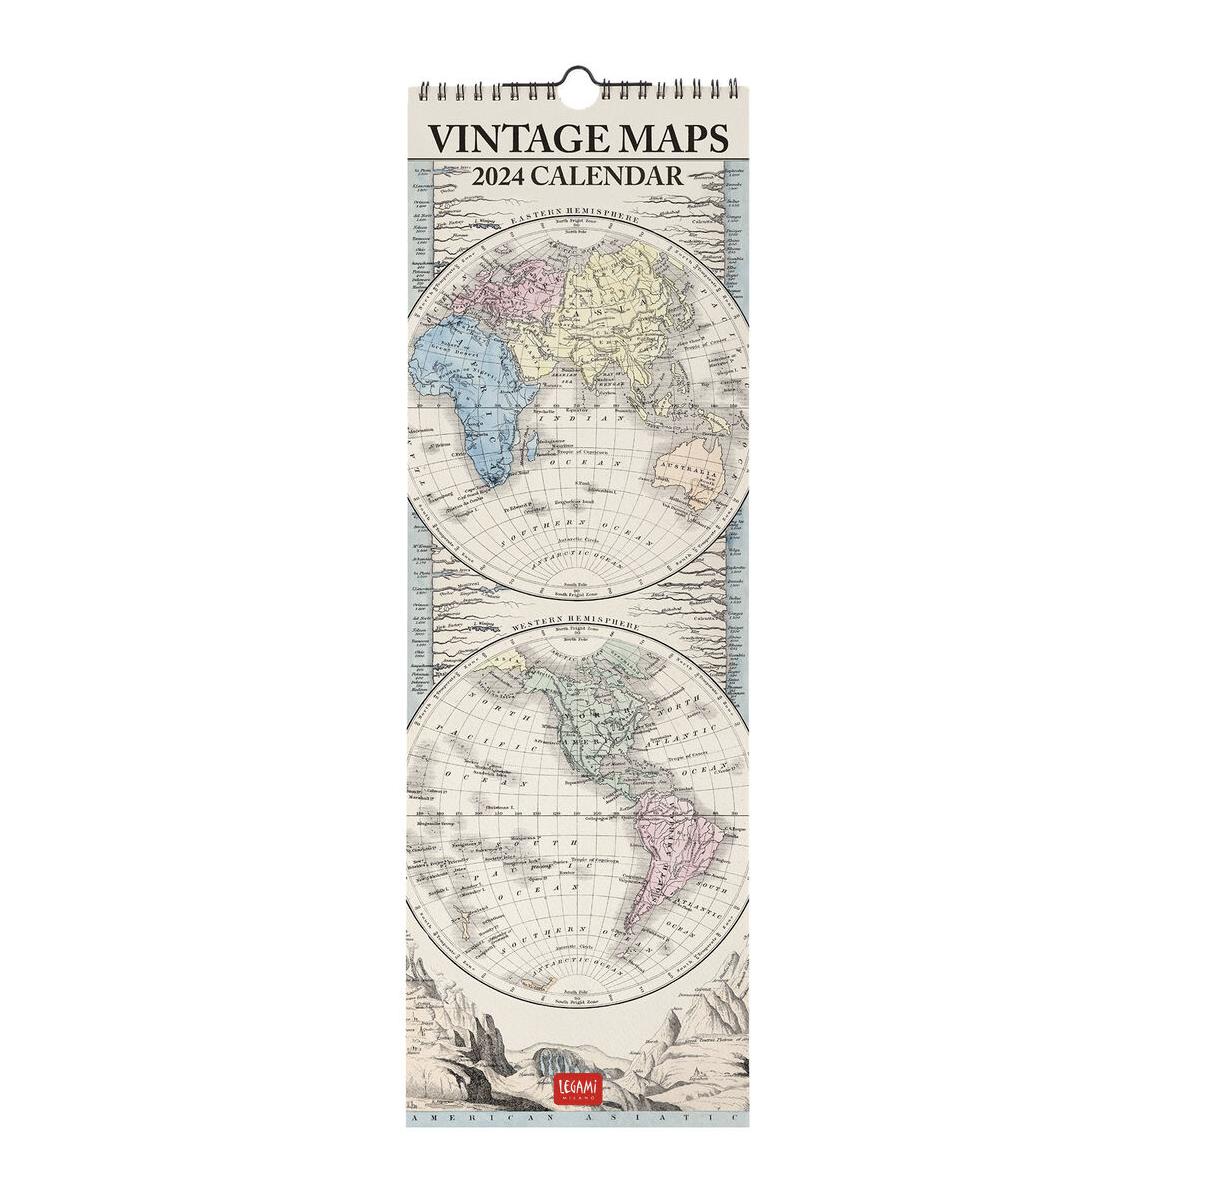 Calendario vintage maps 2024 - 16x49 - Aa.vv - calendario